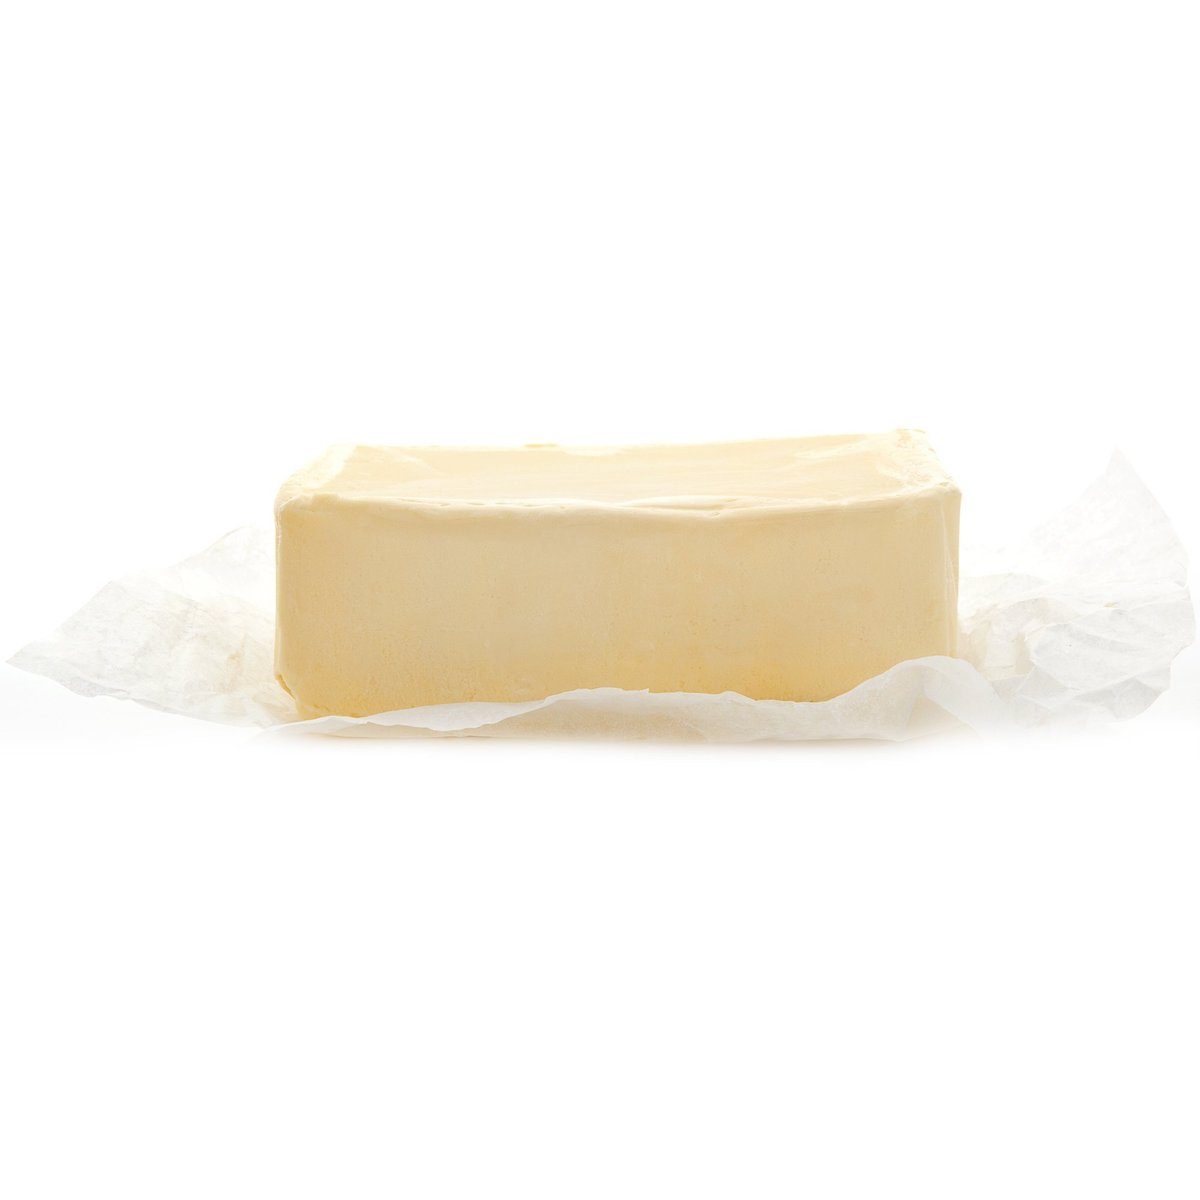 Gran Moravia Čerstvé máslo, ručně krájené v akci